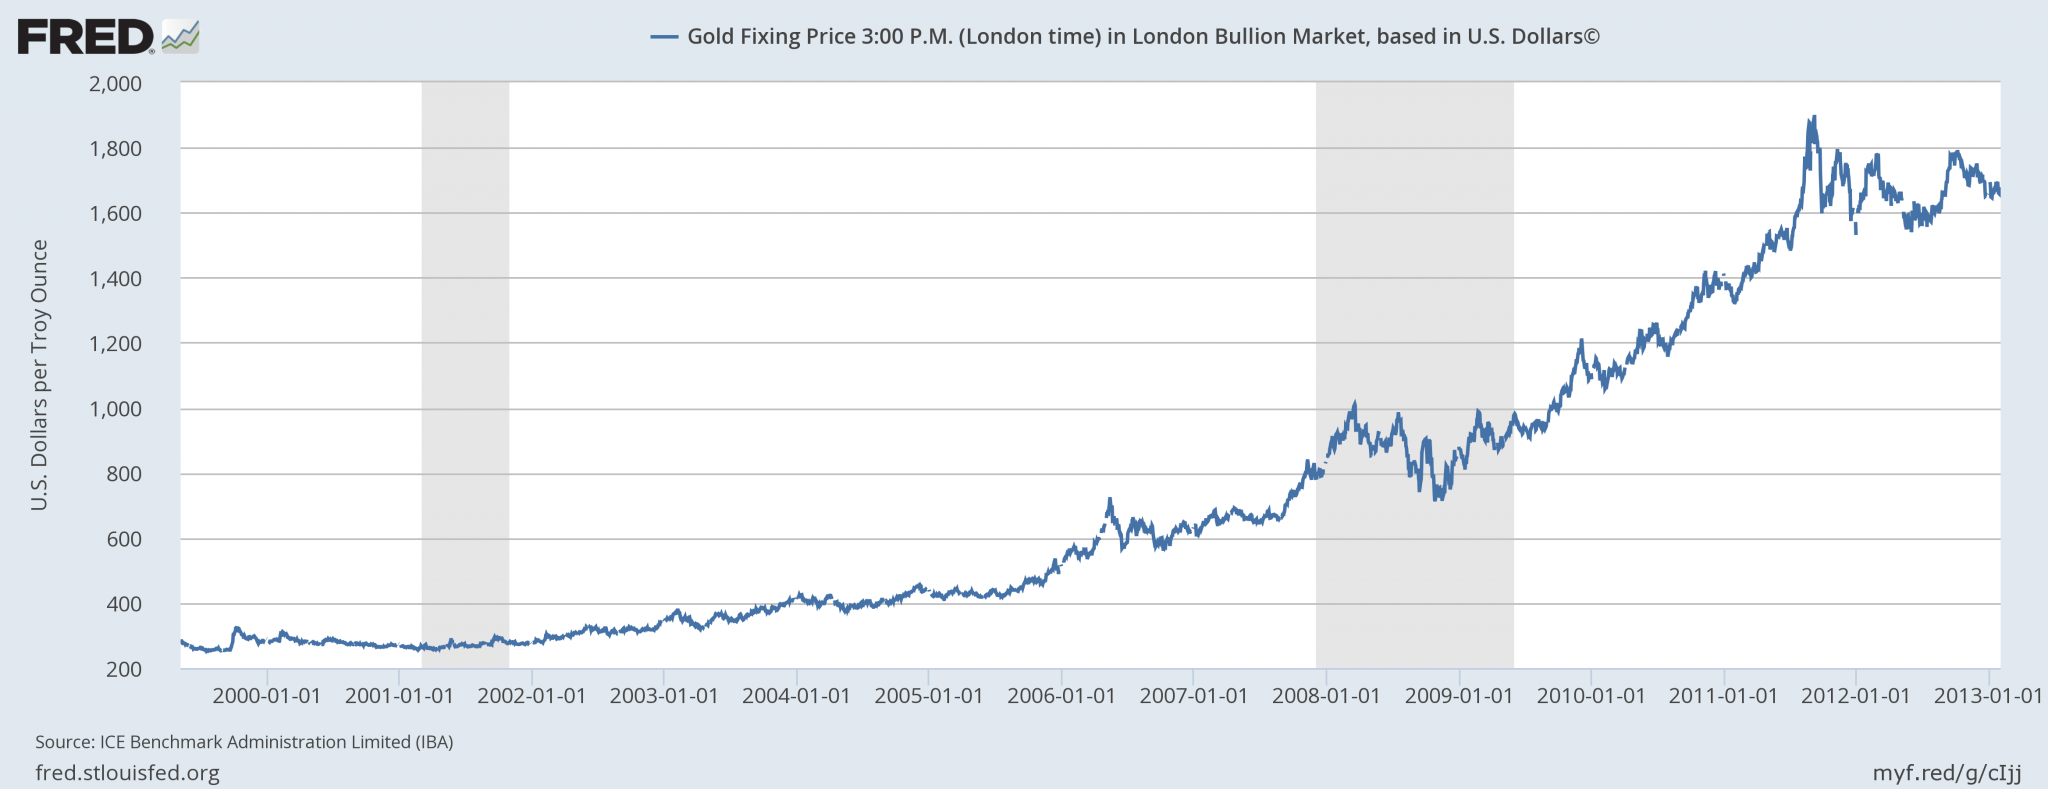 Лондонская биржа металлов цены золото. Лондонская биржа золота. Динамика цен алюминия на лондонской бирже. Лондонский рынок золота график. Лондонская биржа золото к доллару.